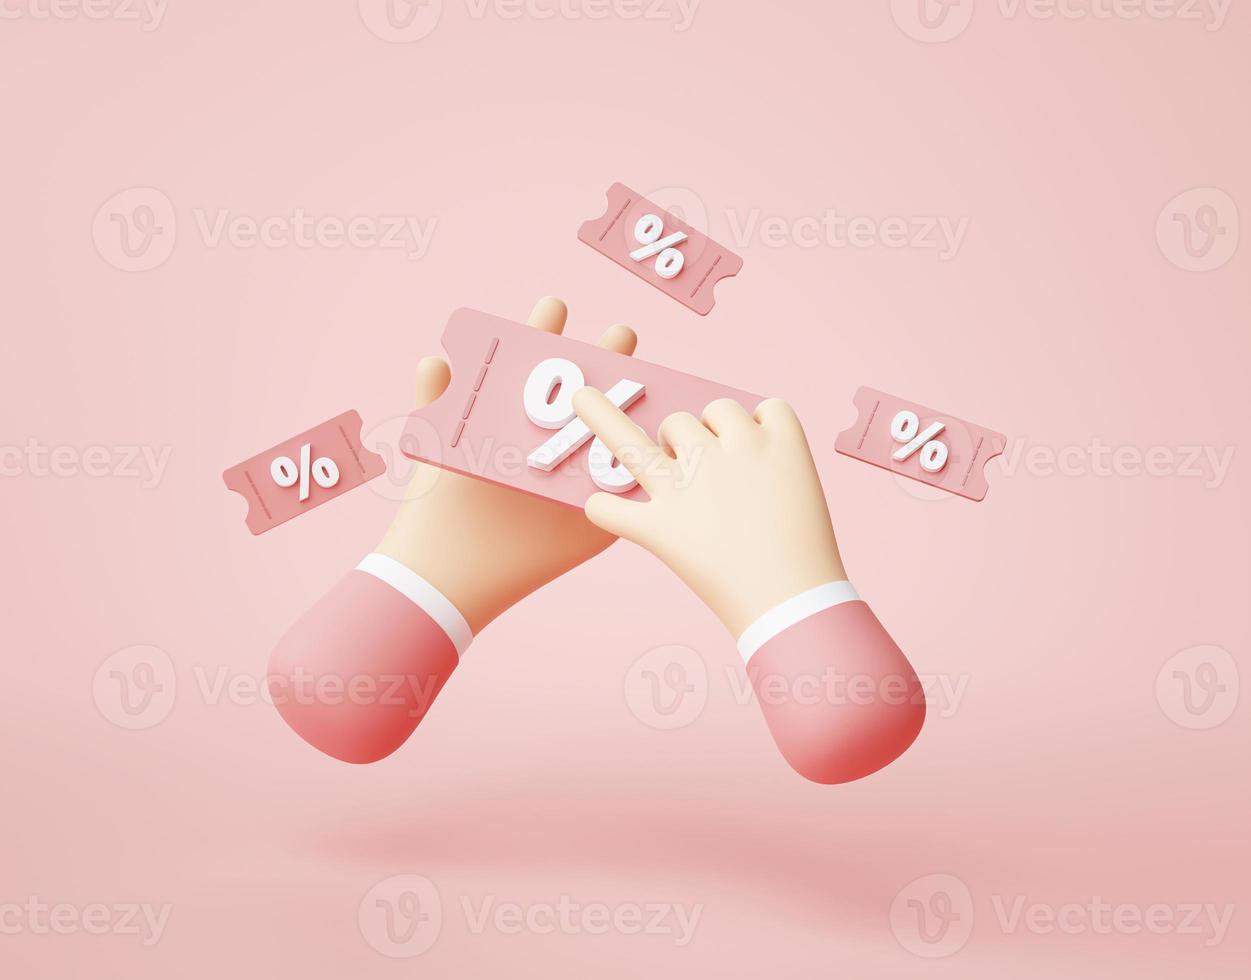 mano sujetando cupón de descuento porcentaje compras en línea símbolo icono dibujos animados representación 3d foto